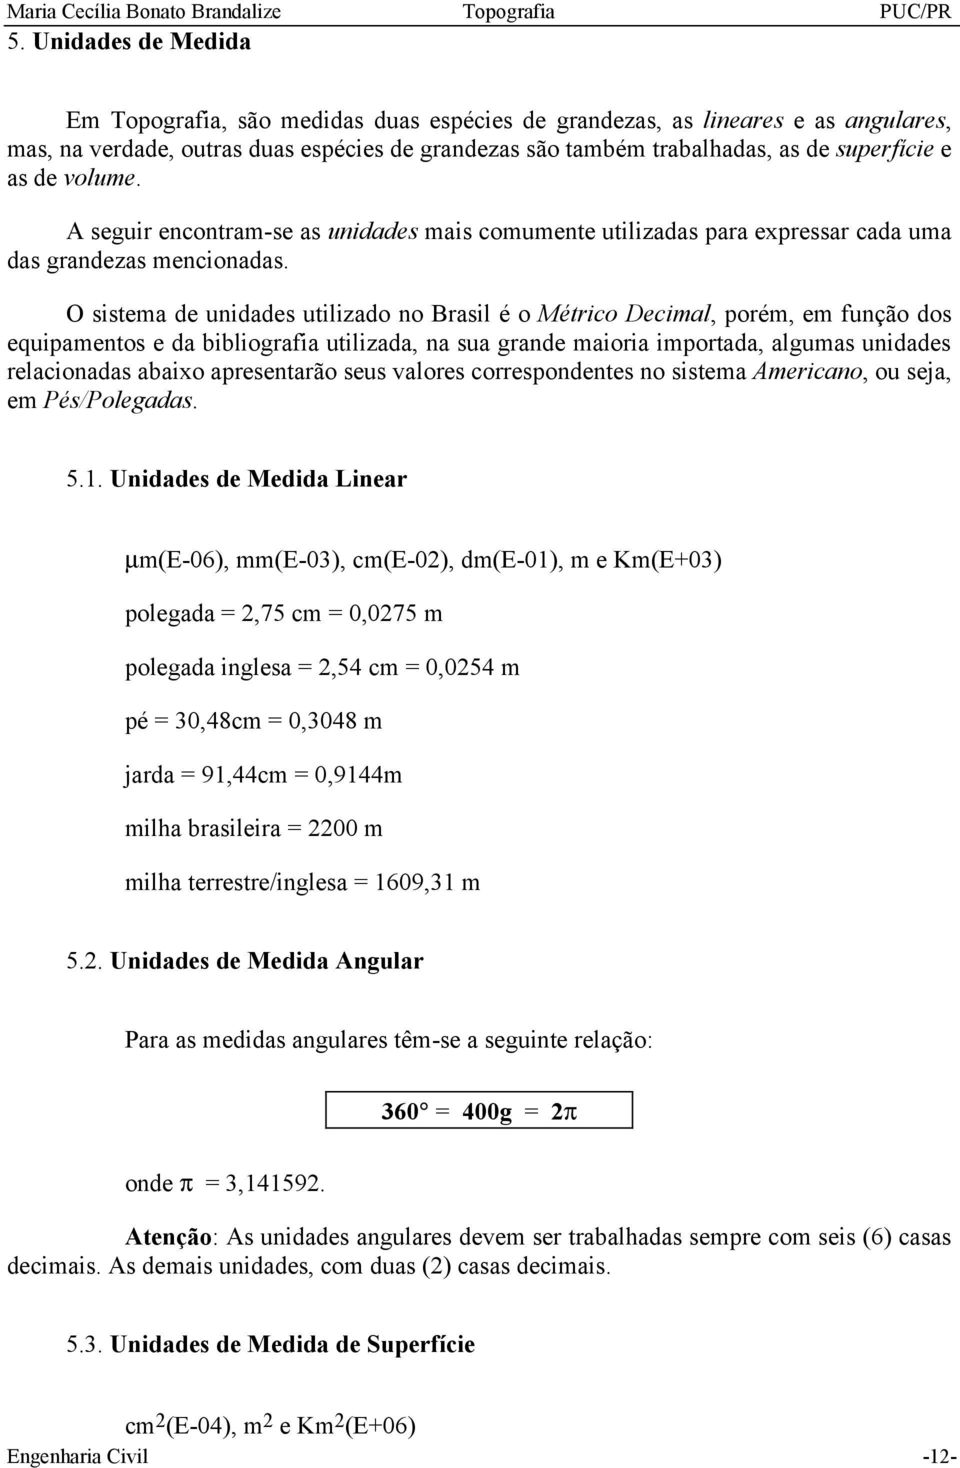 O sistema de unidades utilizado no Brasil é o Métrico Decimal, porém, em função dos equipamentos e da bibliografia utilizada, na sua grande maioria importada, algumas unidades relacionadas abaixo